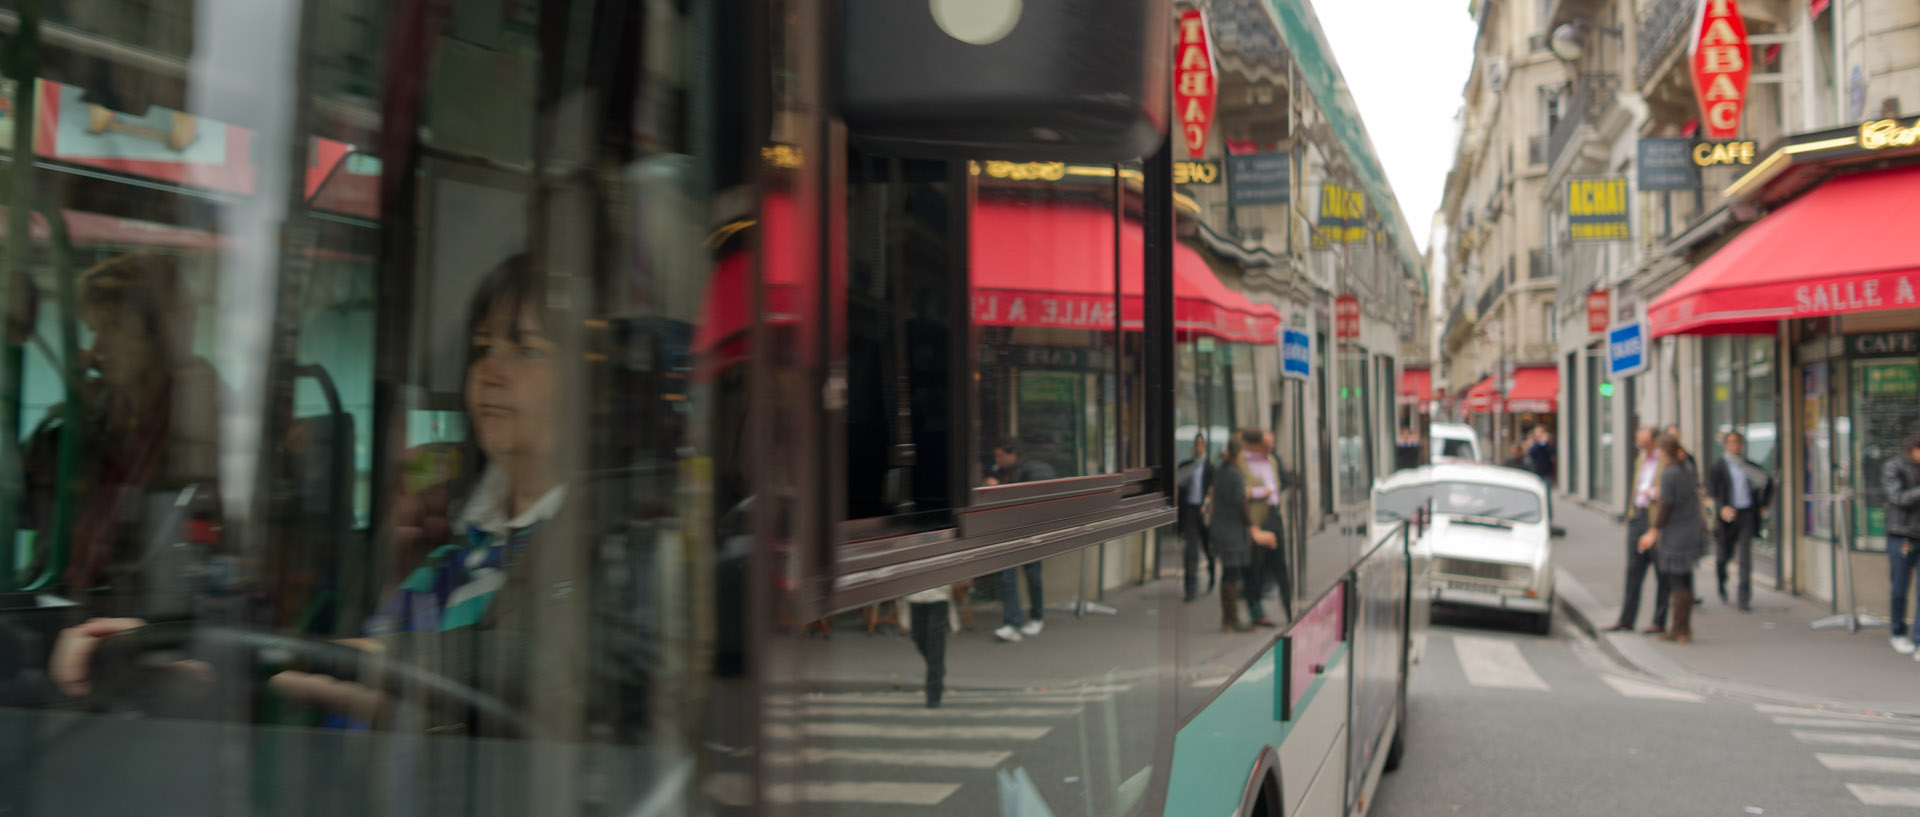 Passage d'un autobus, rue Drouot, à Paris.